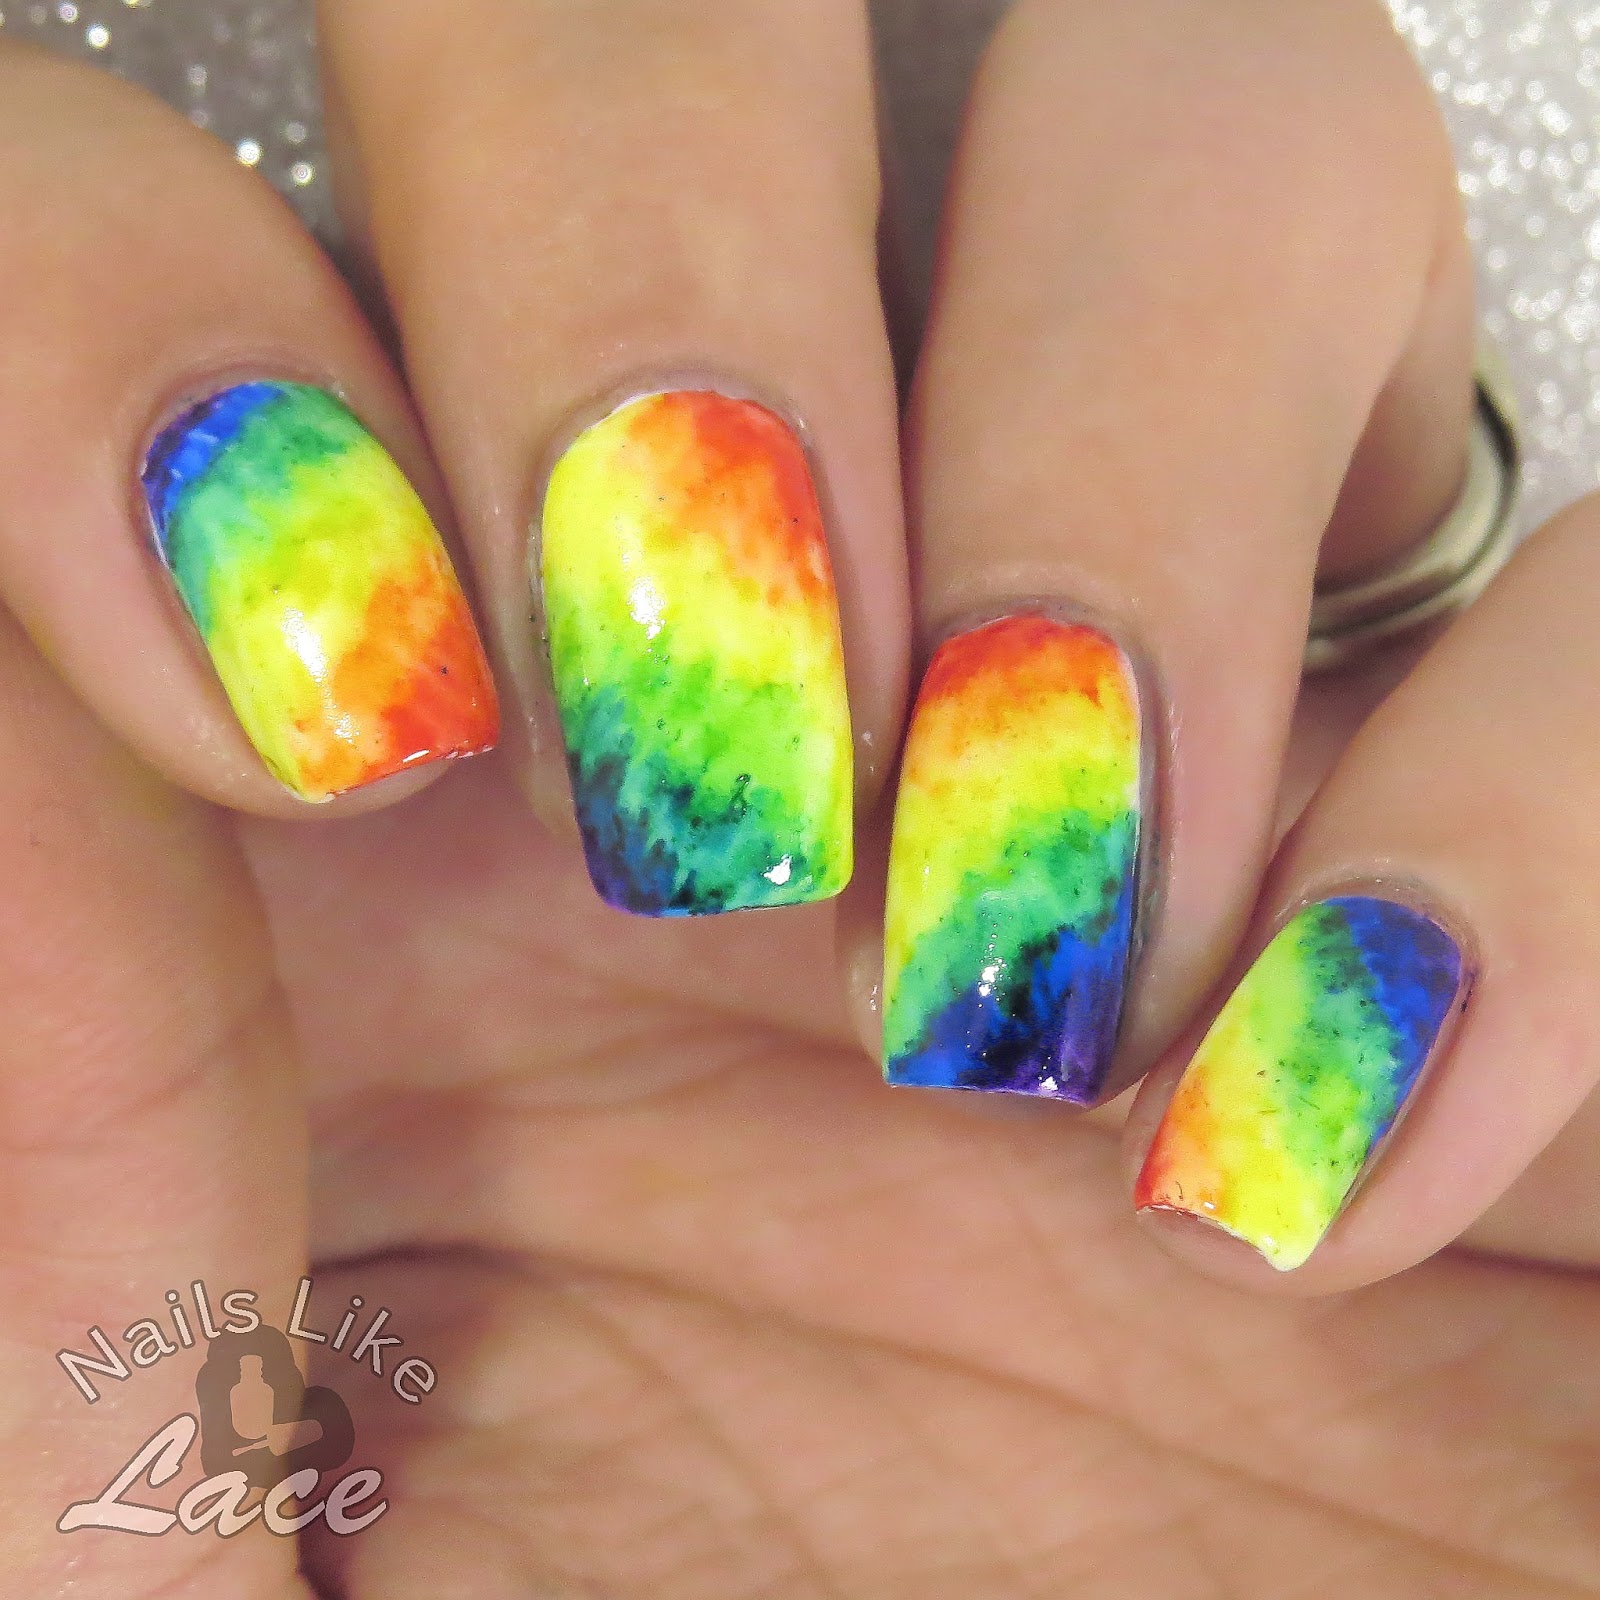 NailsLikeLace: A Weekly Dose of Rainbows: Tie-Dye